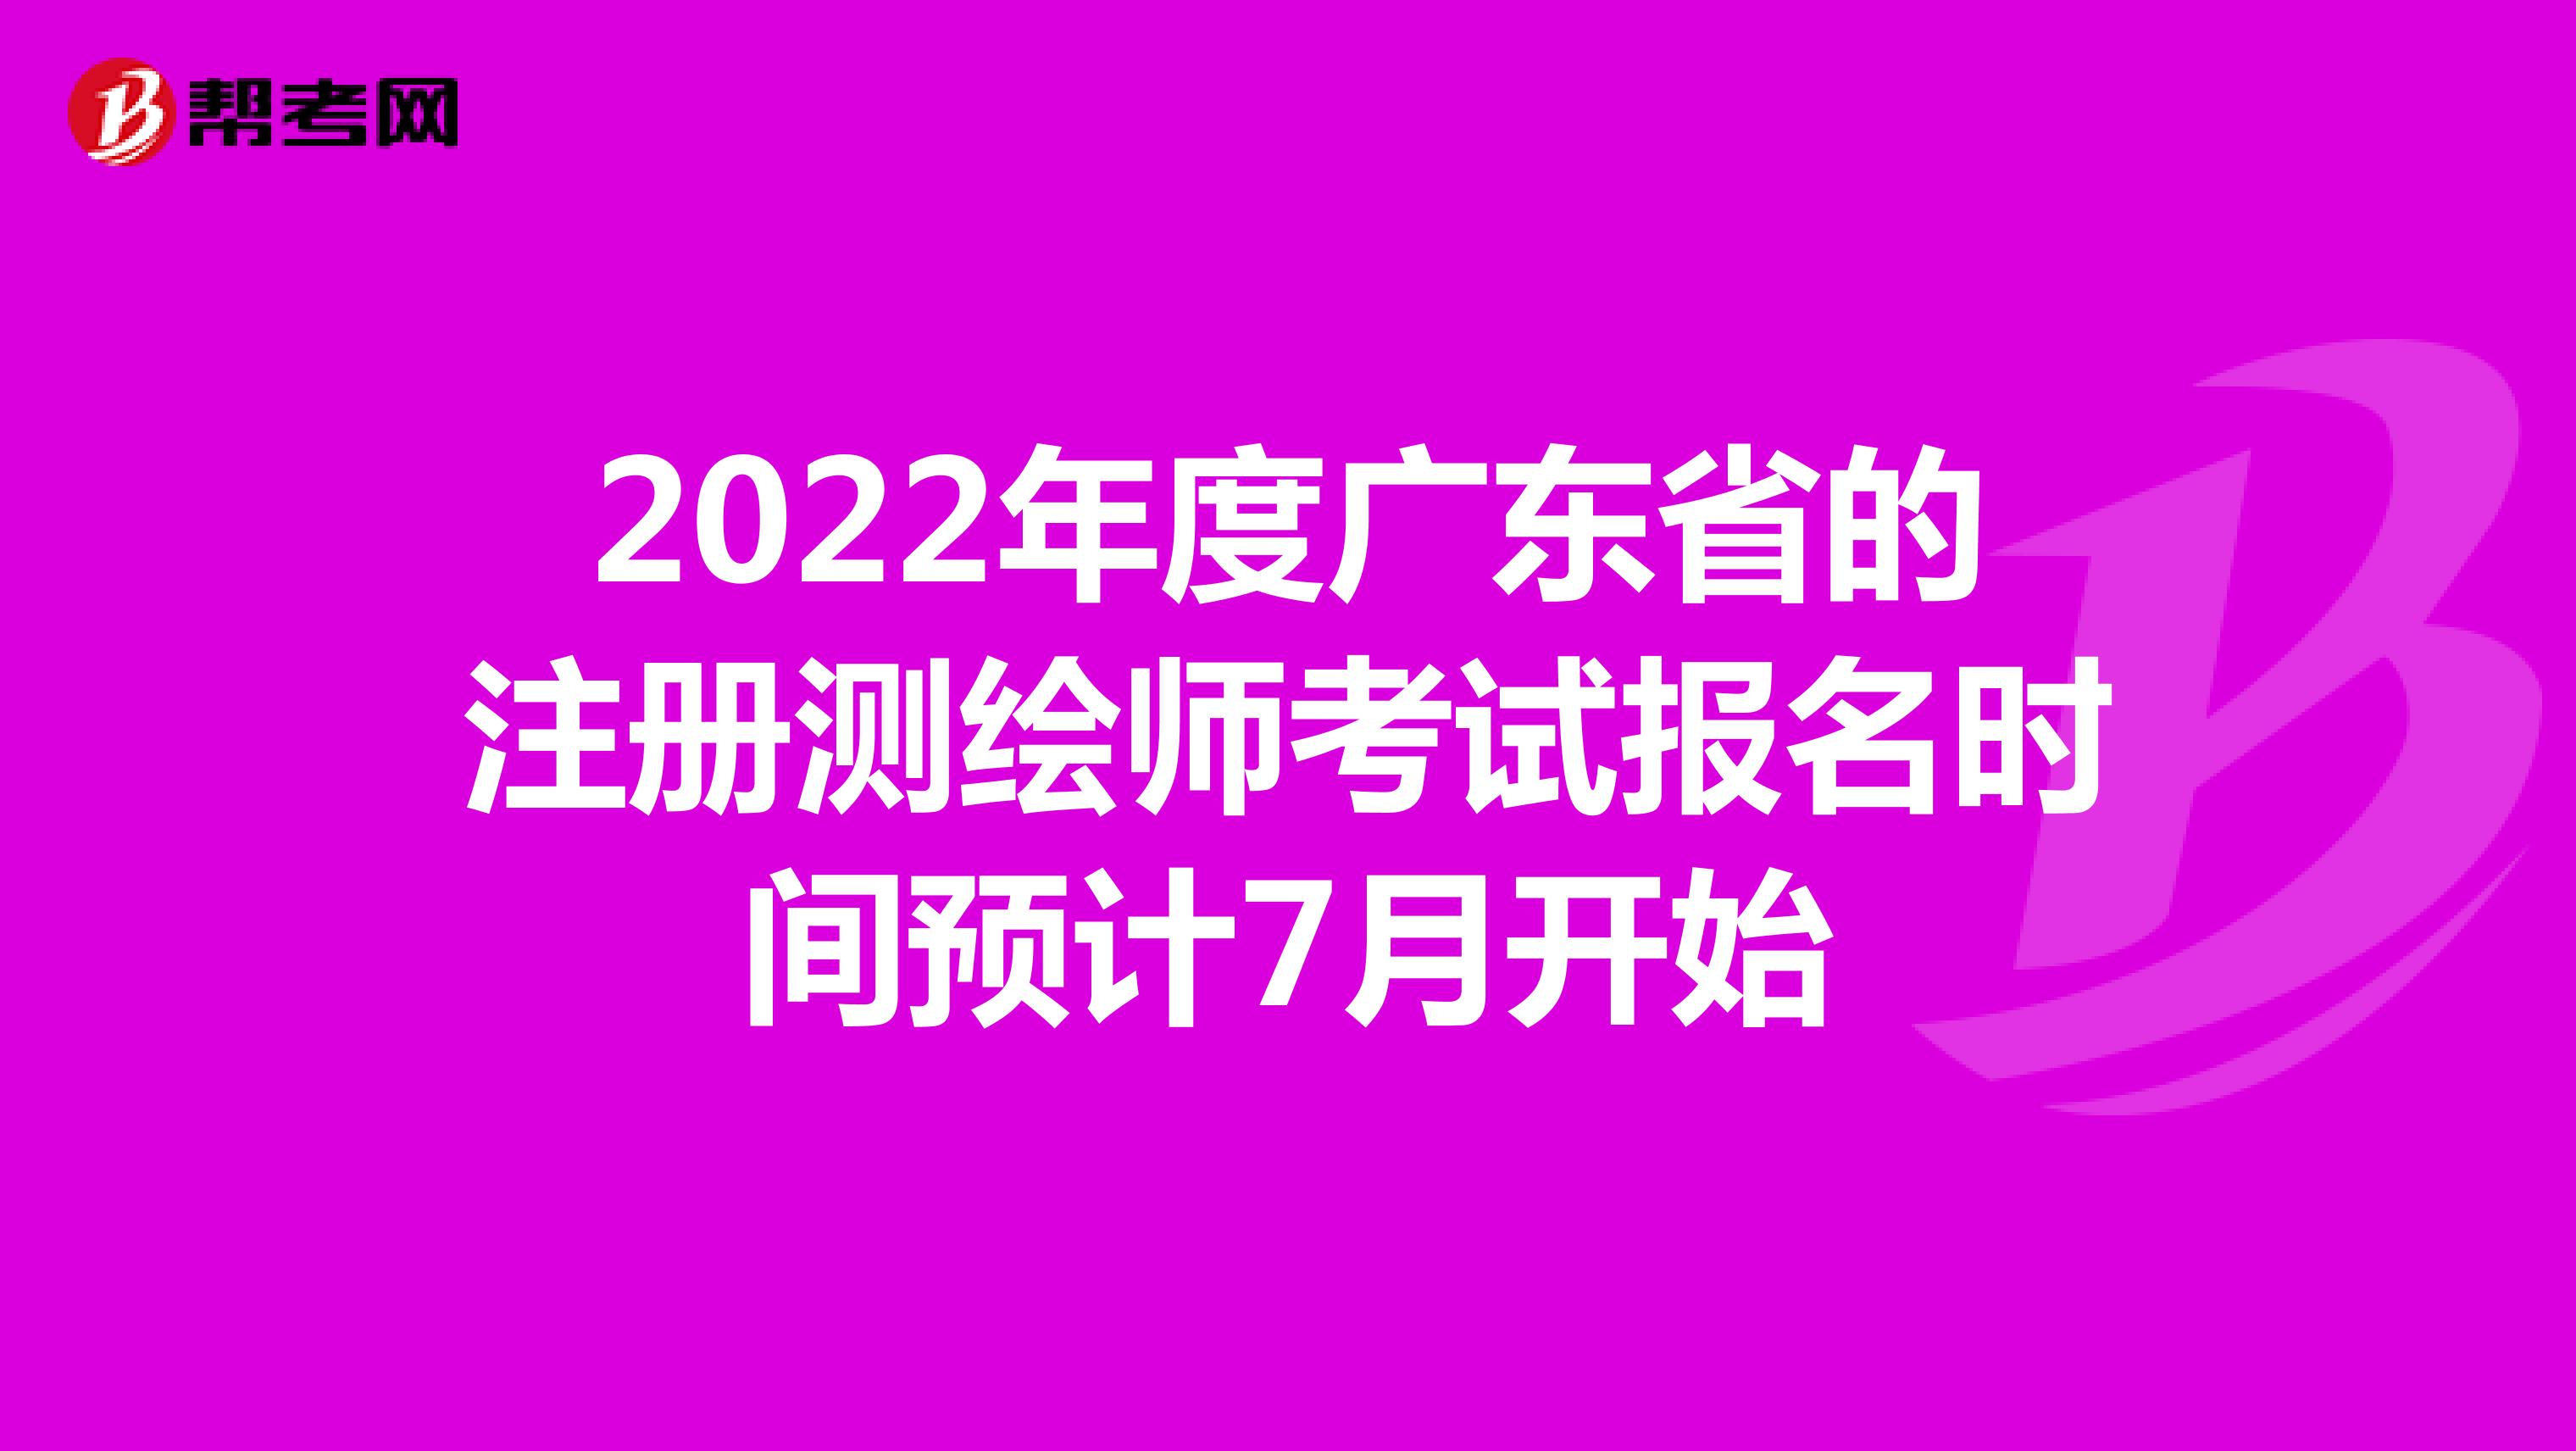 2022年度广东省的注册测绘师考试报名时间预计7月开始